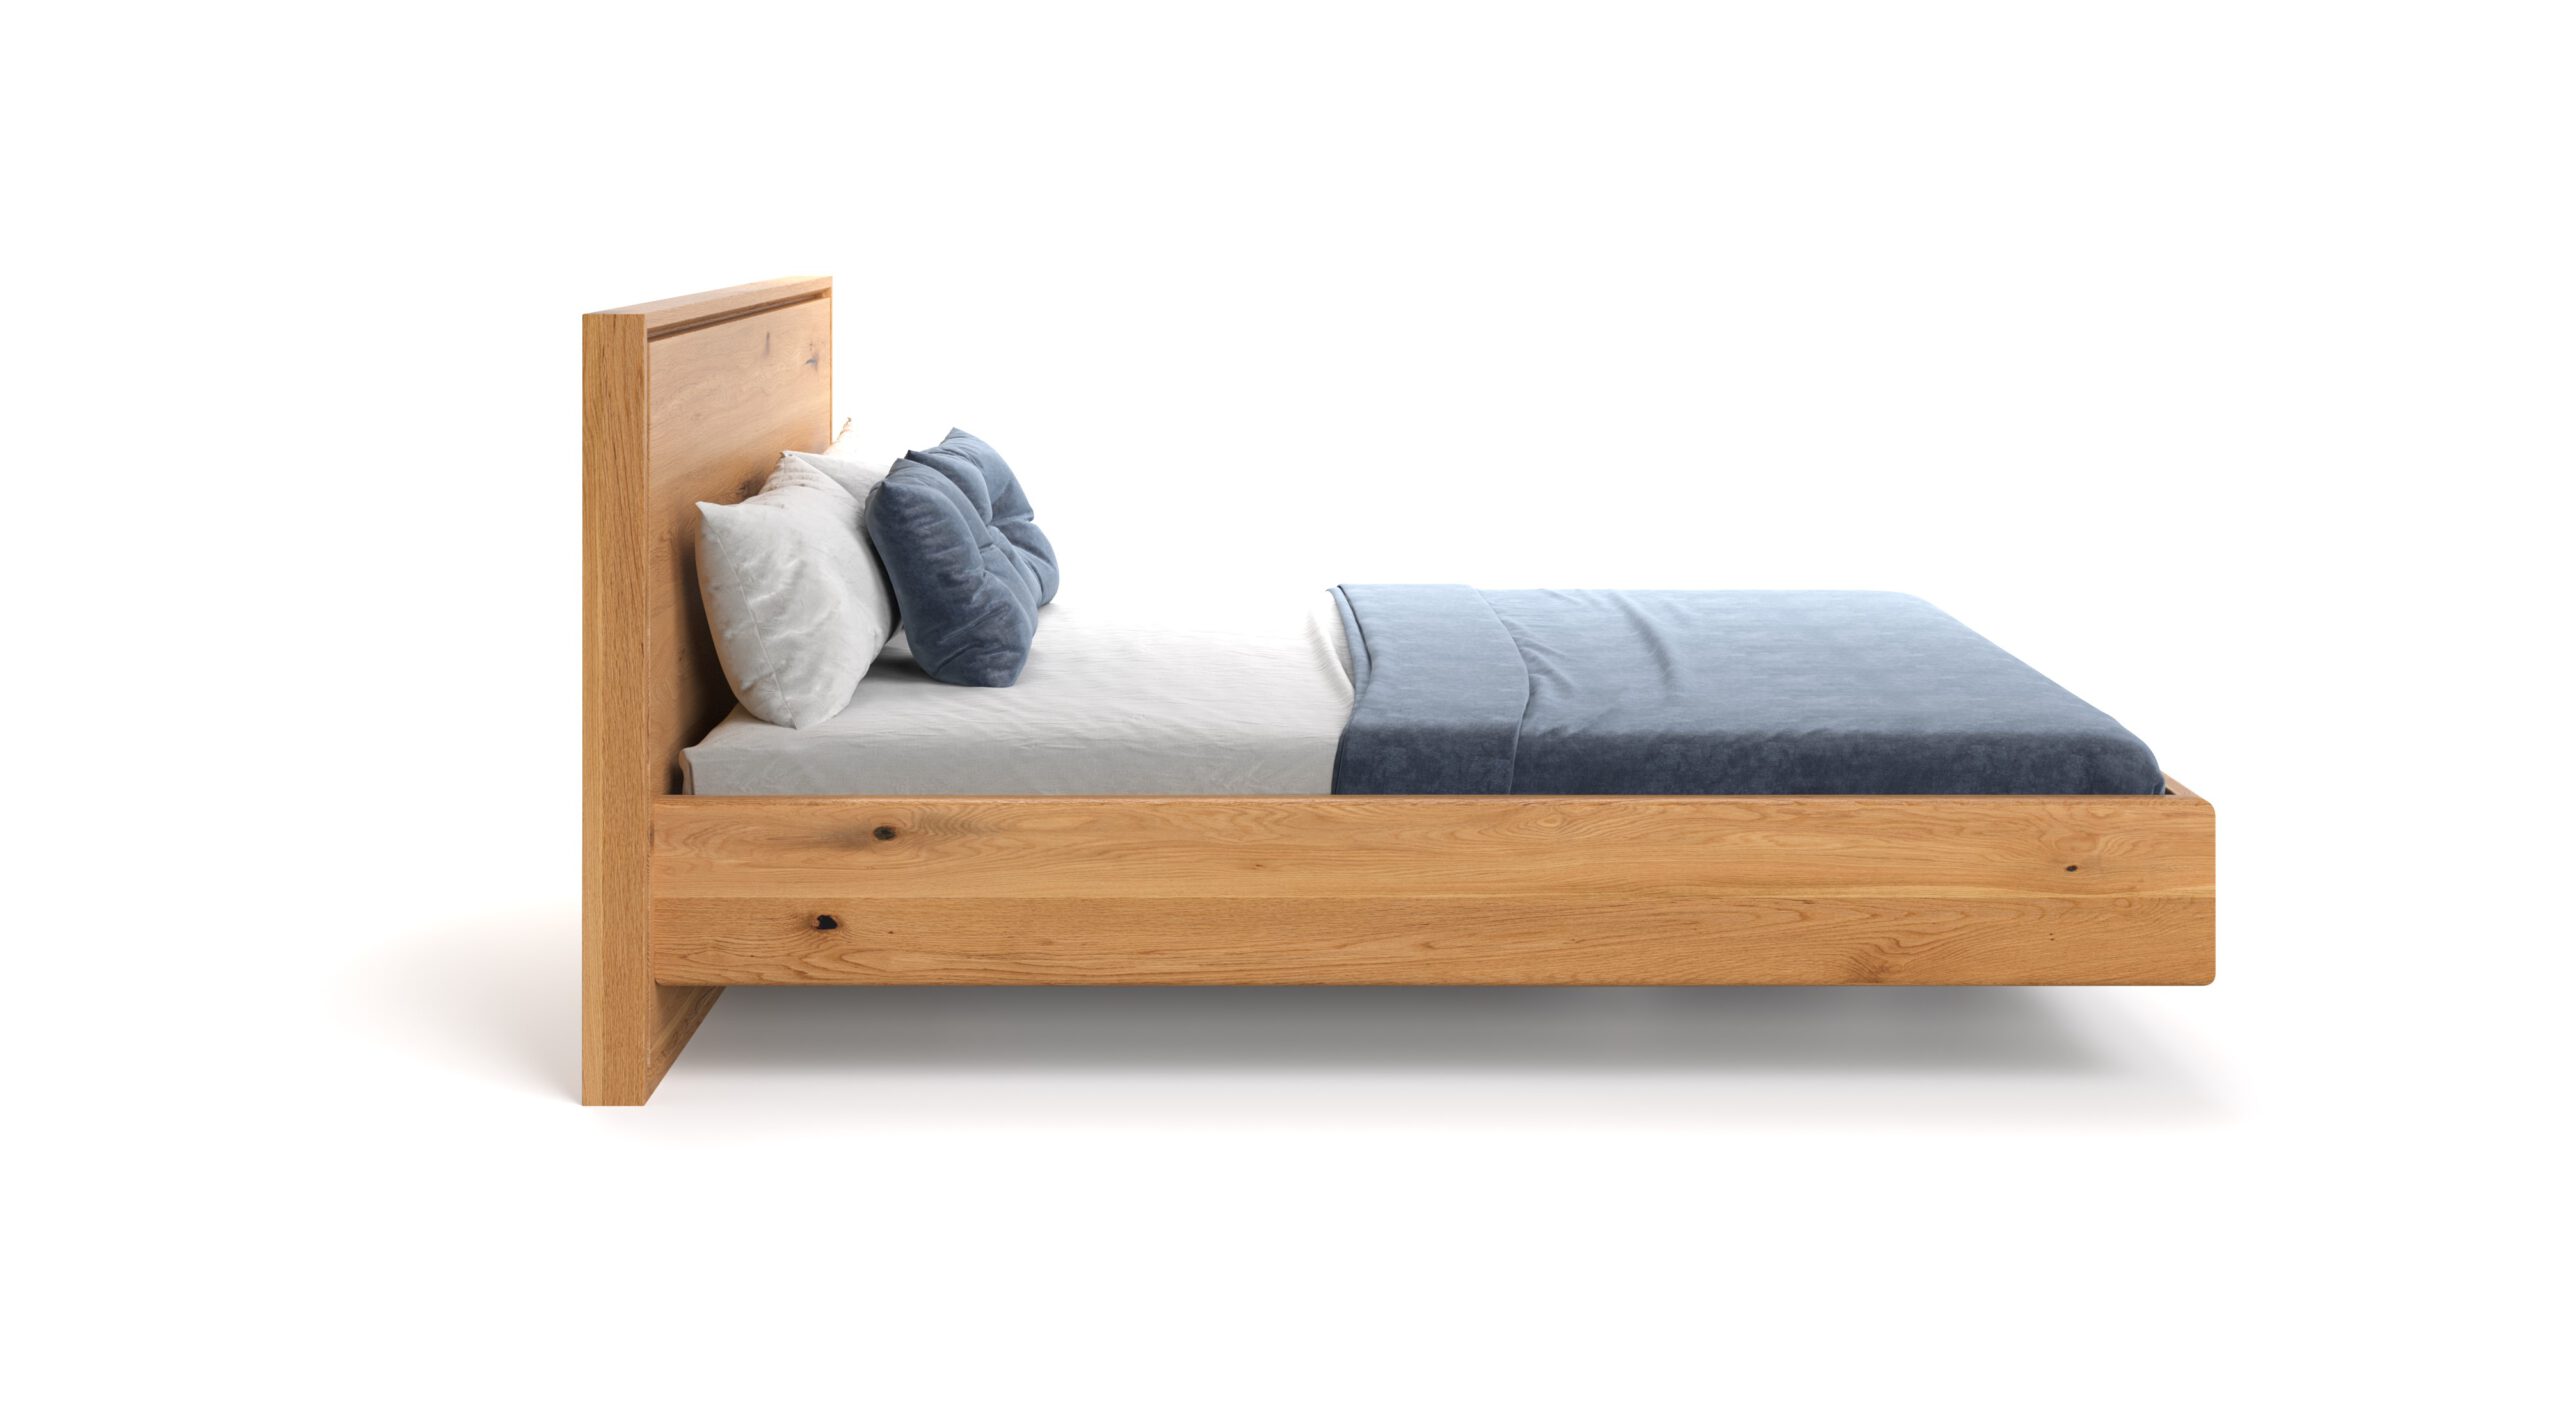 Łóżko lewitujące Valor wykonane z litego drewna dębowego.